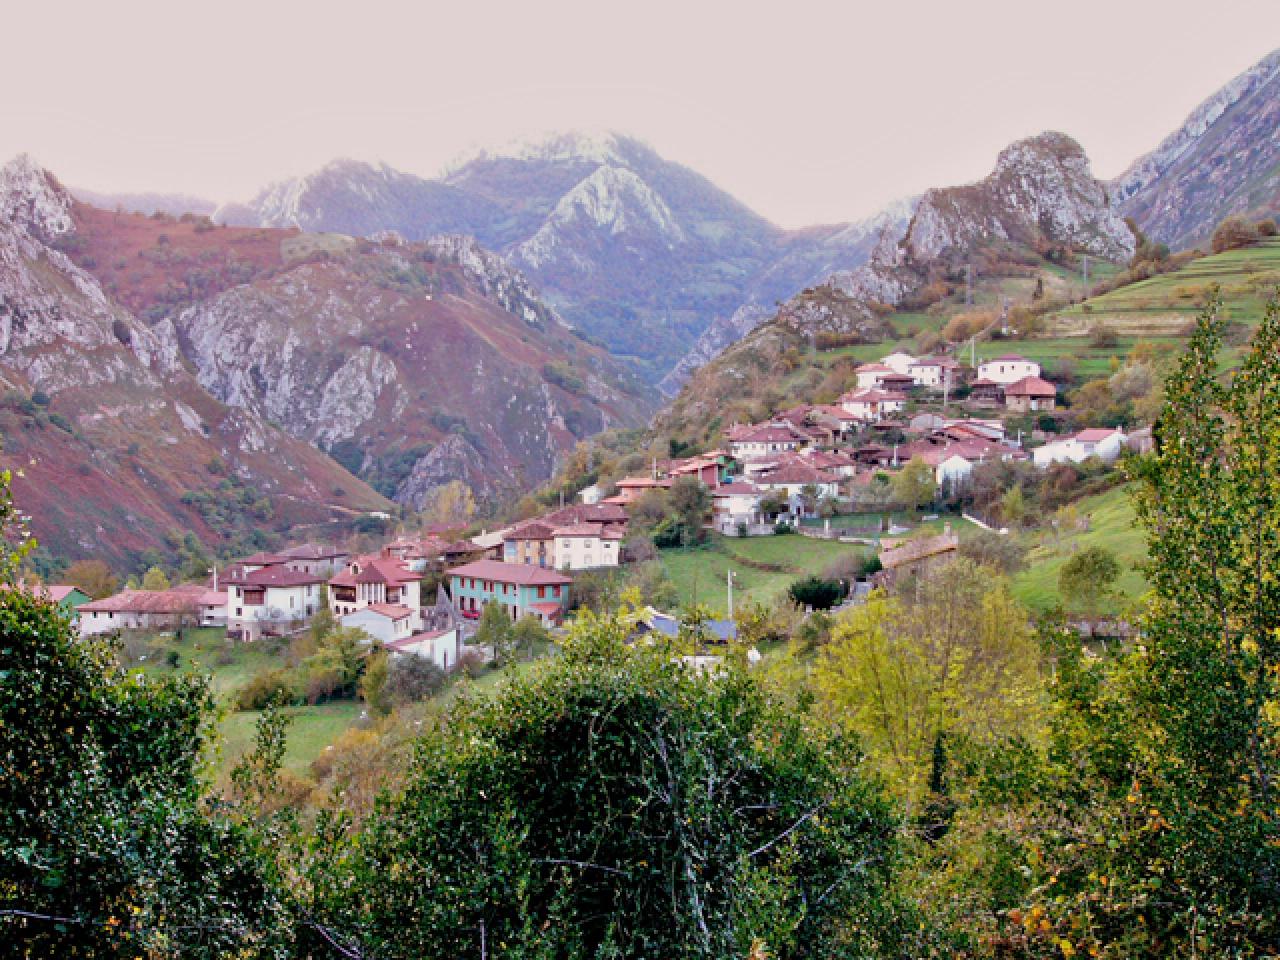 Ponga, Asturias